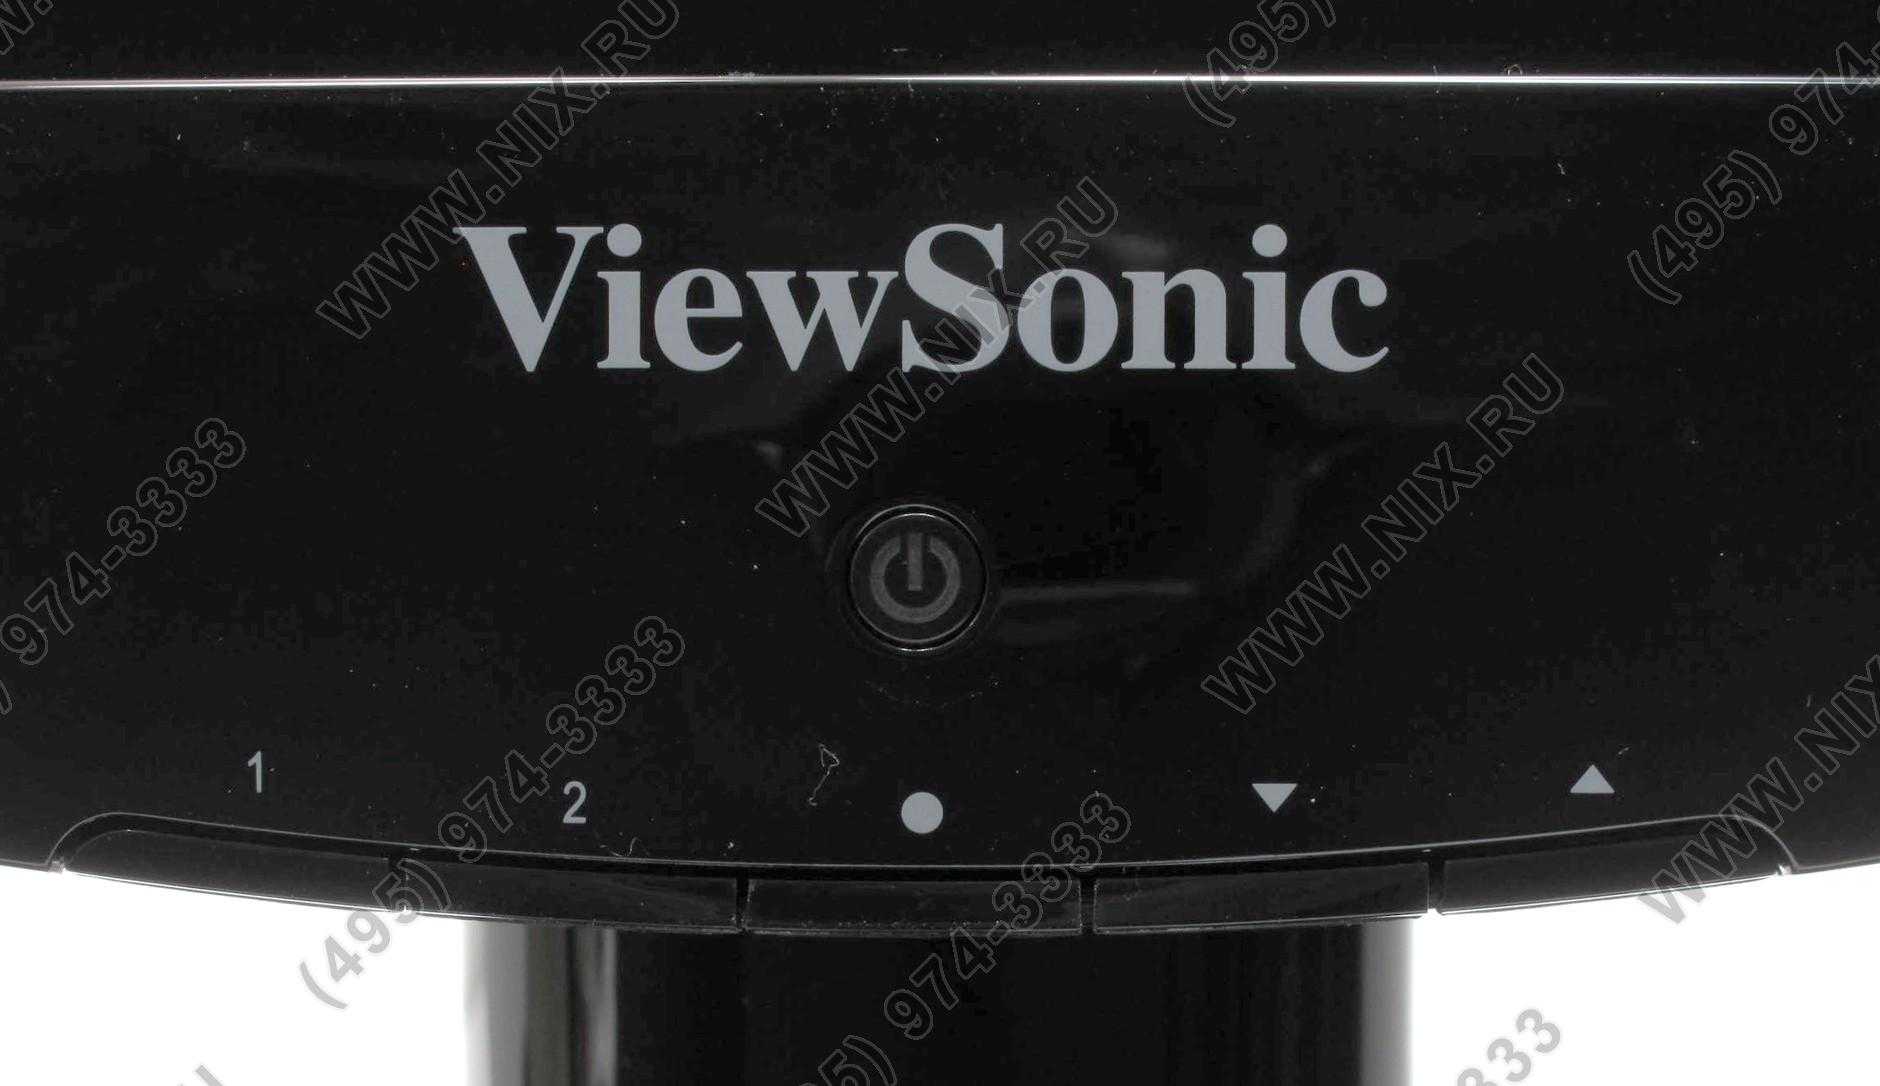 Жк монитор 23.6" viewsonic va2431w — купить, цена и характеристики, отзывы